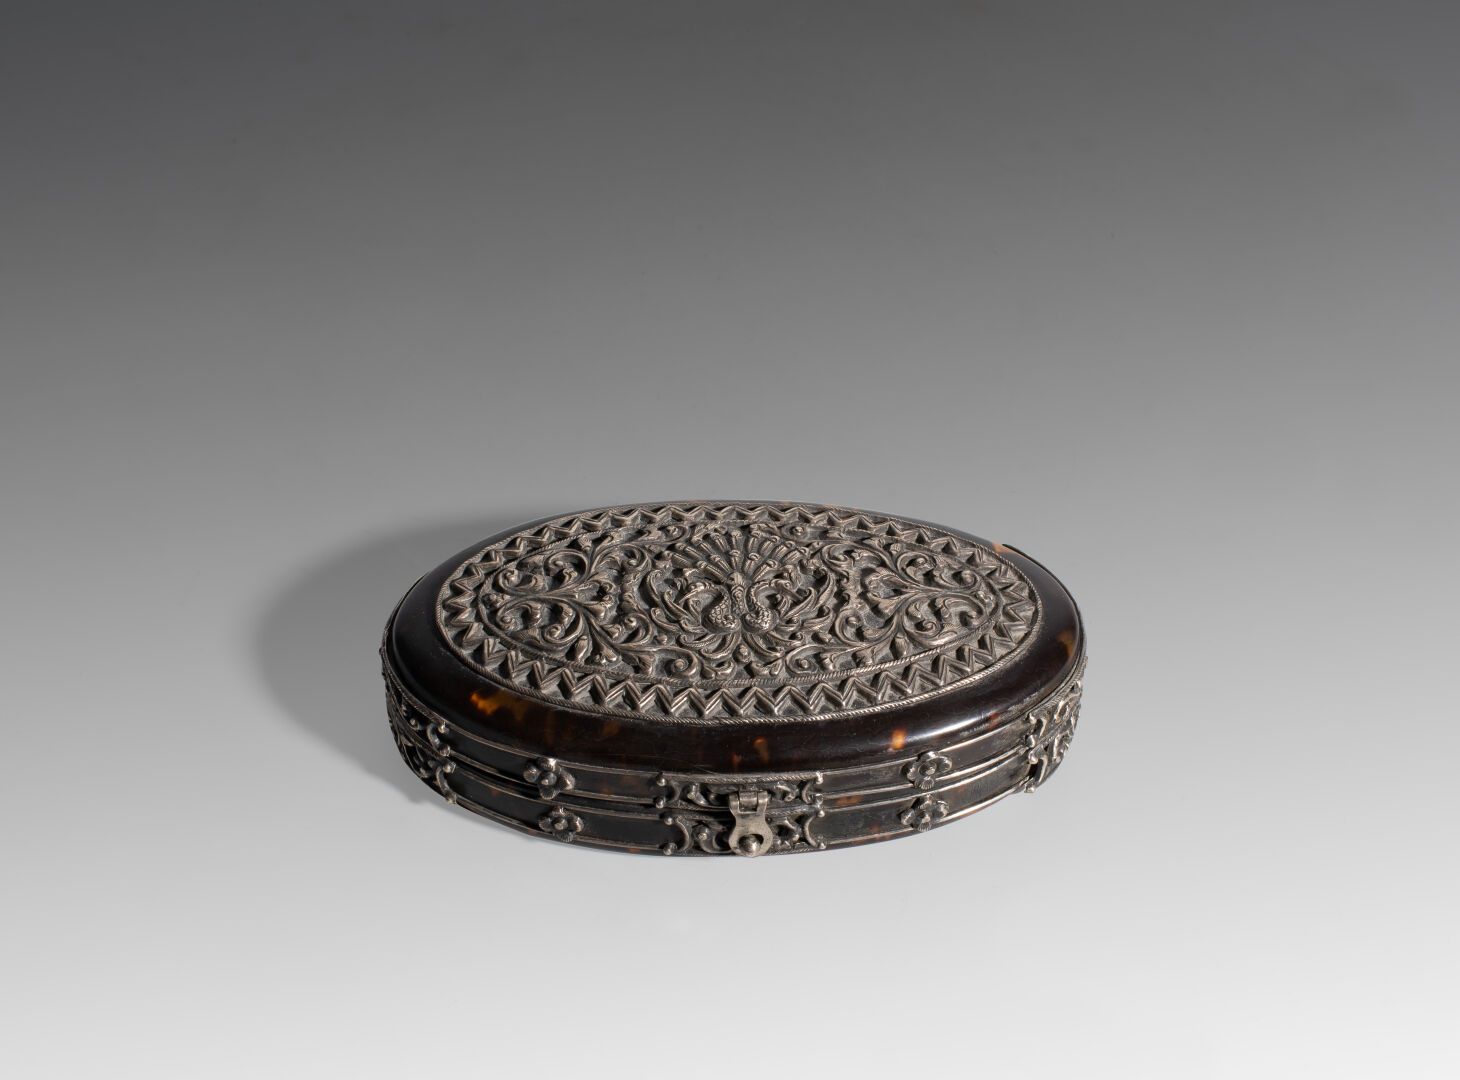 Null 椭圆形银色和玳瑁色盒子

19世纪

长：12厘米

(2530)